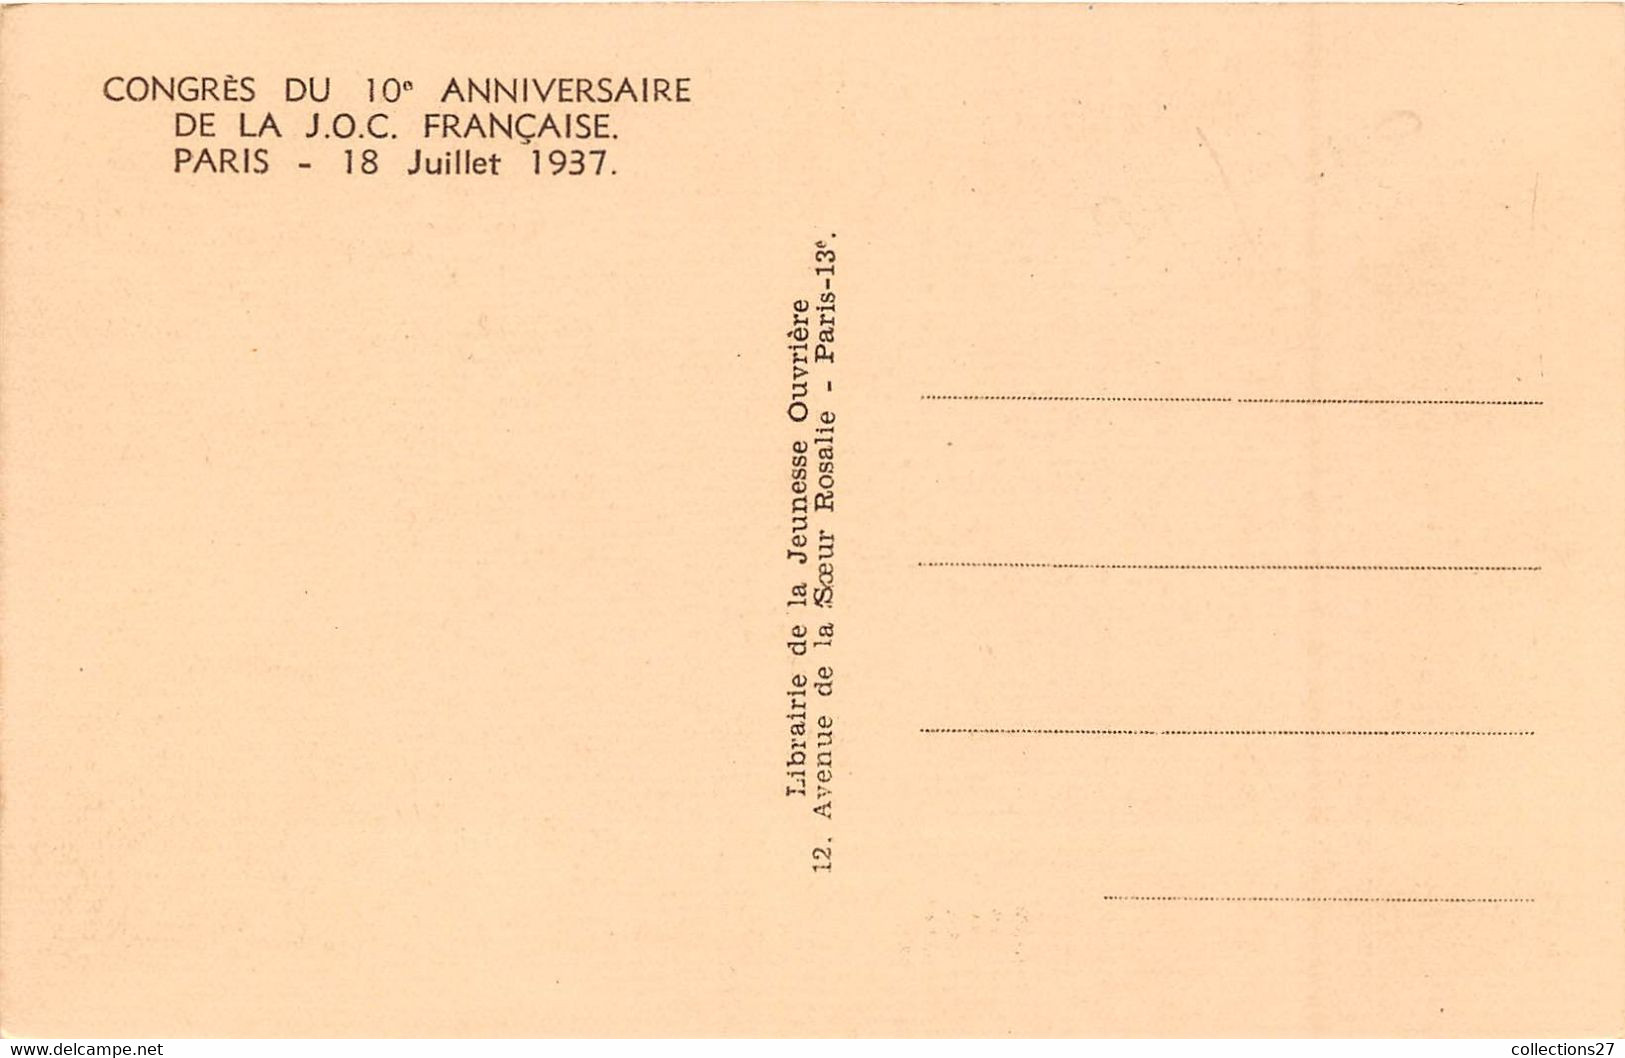 92-CLICHY- 9 CARTES DE LA J.O.C FRANCAISE , CONGRES DU 10eme ANNIVERSAIRE 18 JUILLET 1937